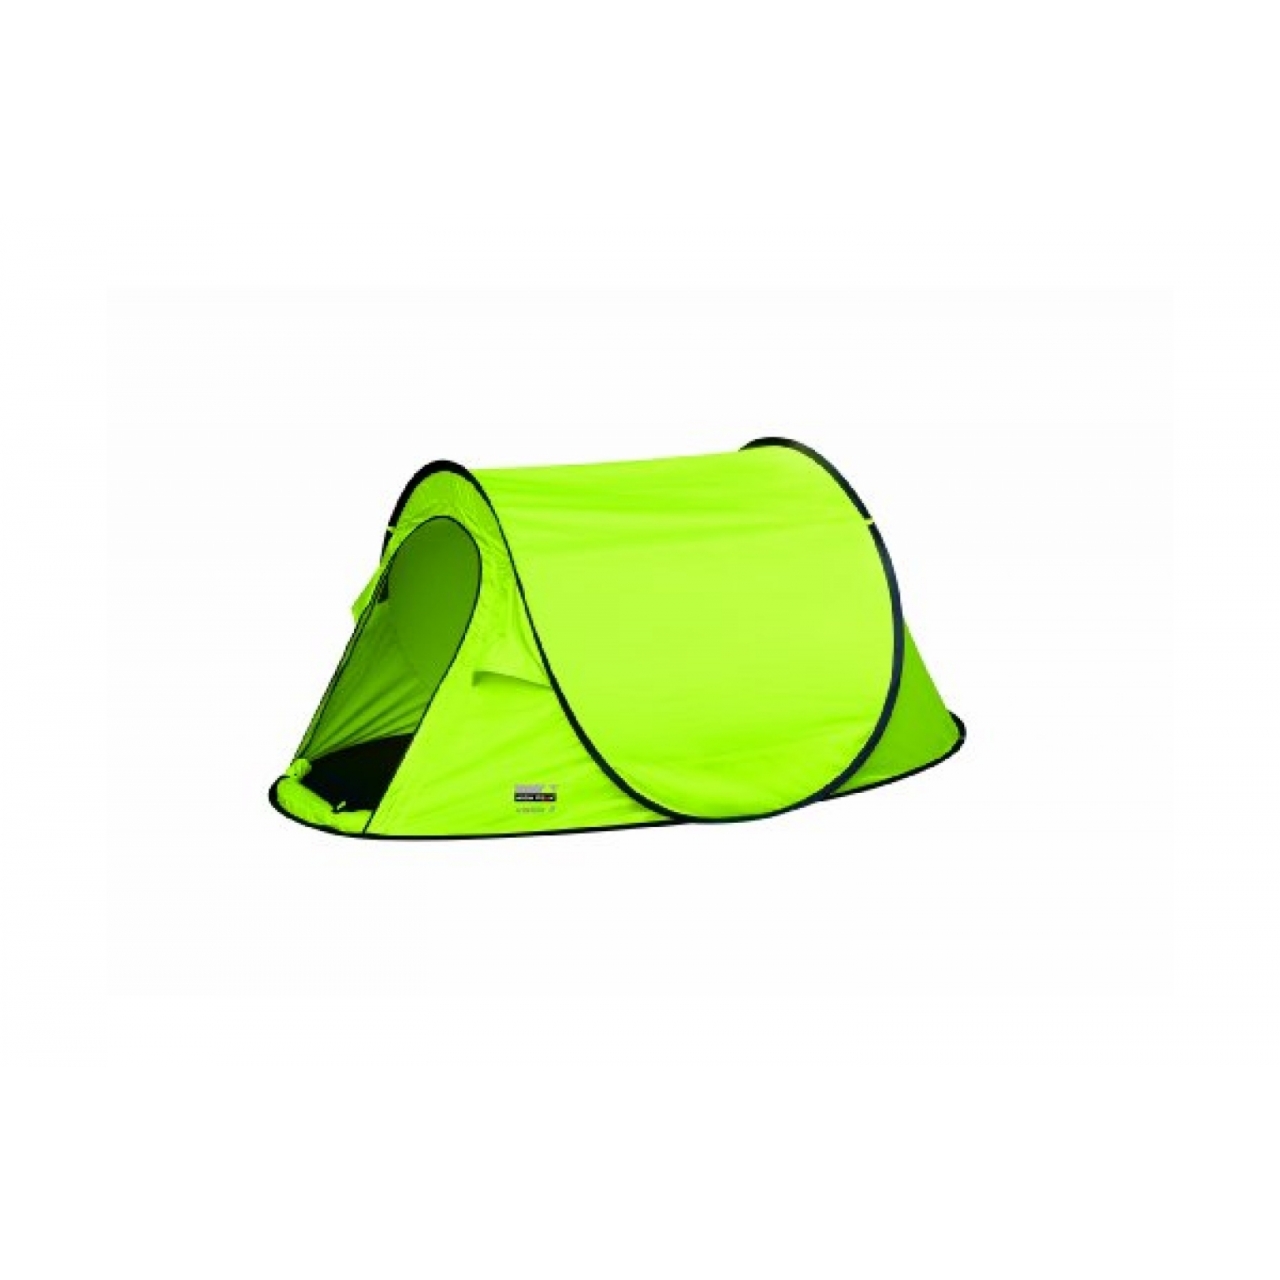 Одноместная палатка. Палатка Redcliffs Outdoor Gear. Палатка Vango Dart 200ds. Палатка самораскладывающаяся 2кубо. Палатка Camp Peak III.